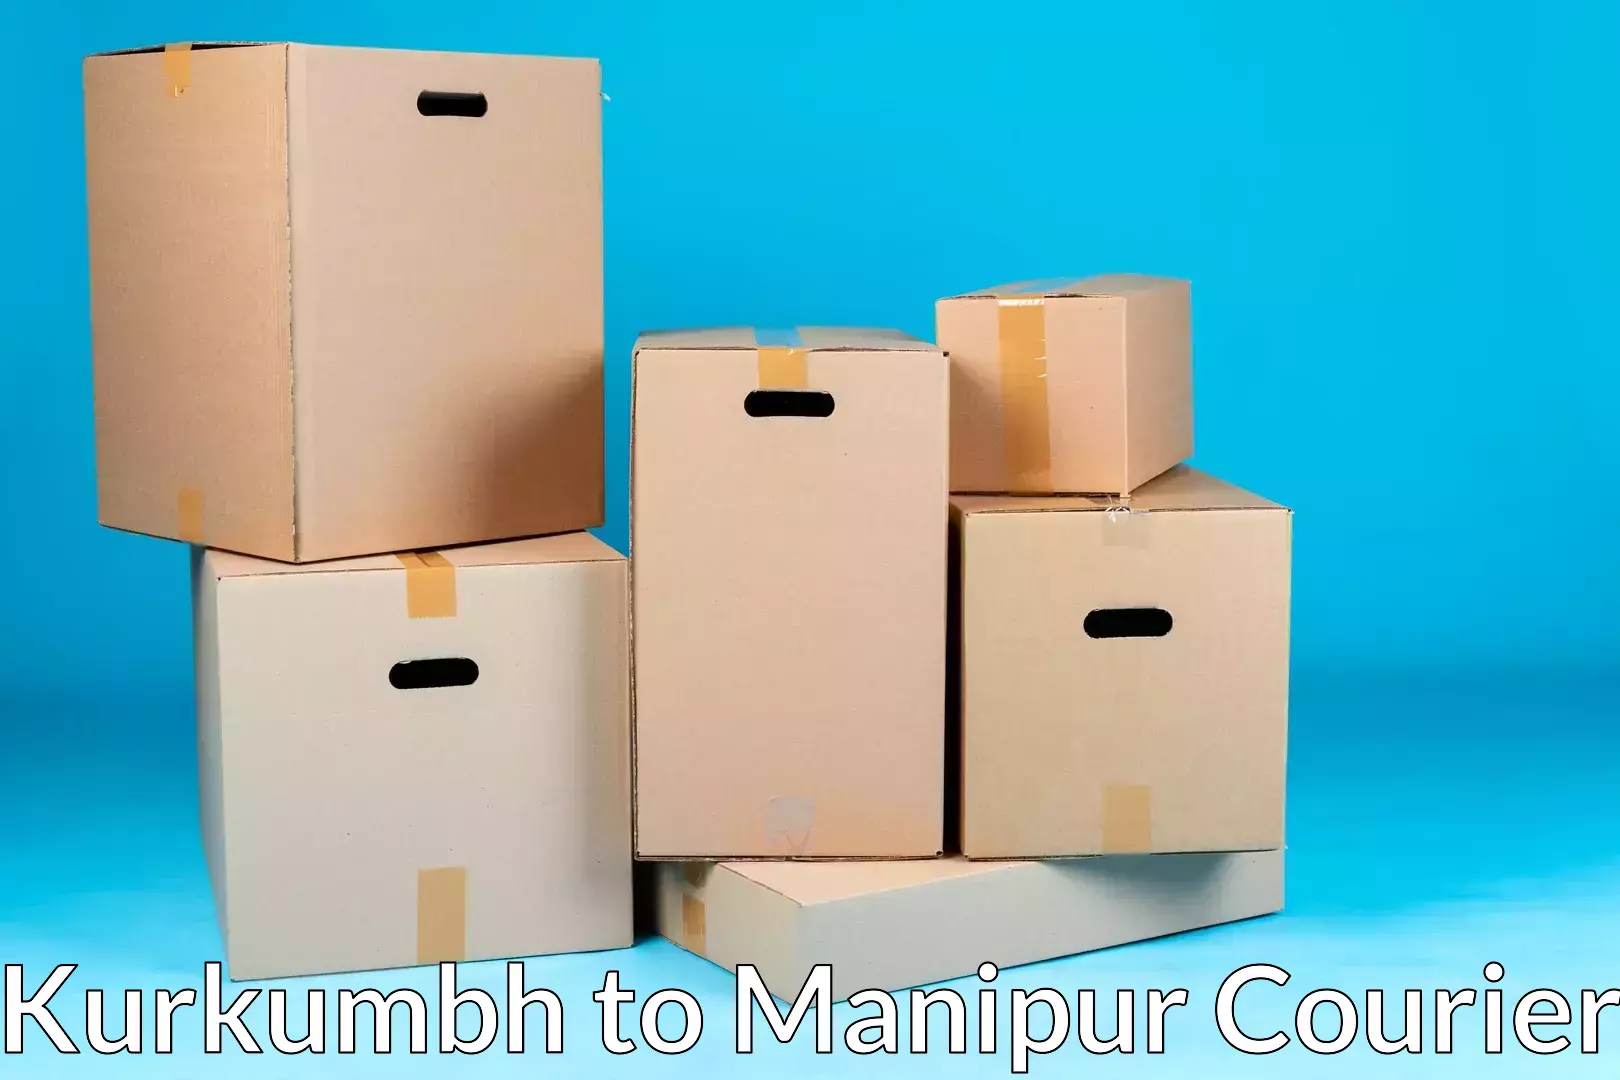 Moving and packing experts Kurkumbh to Manipur